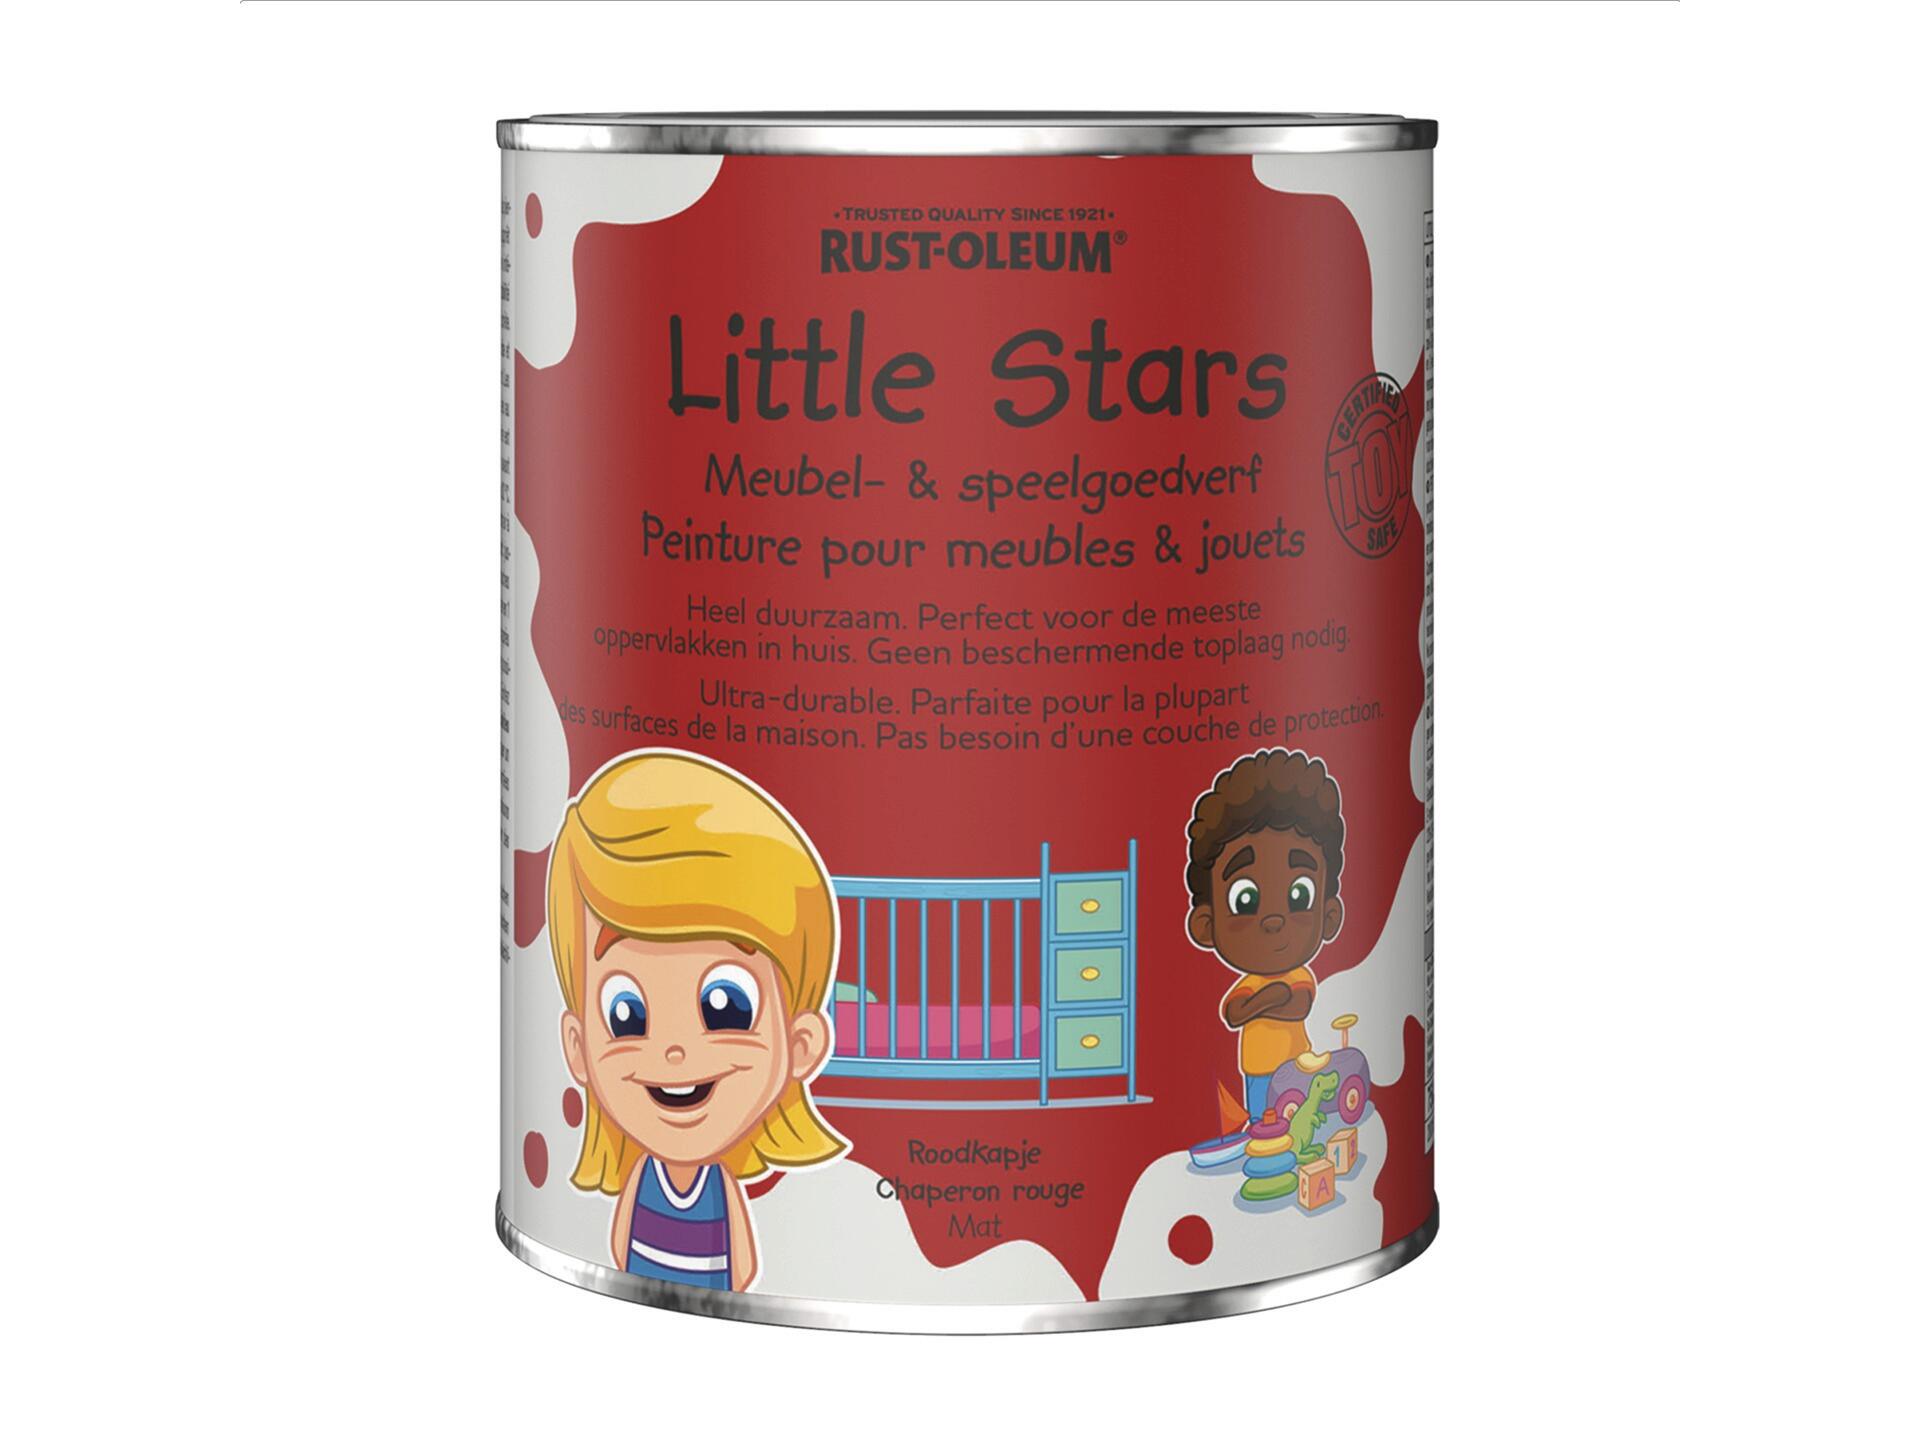 Rust-oleum Little Stars meubel- en speelgoedverf 750ml roodkapje